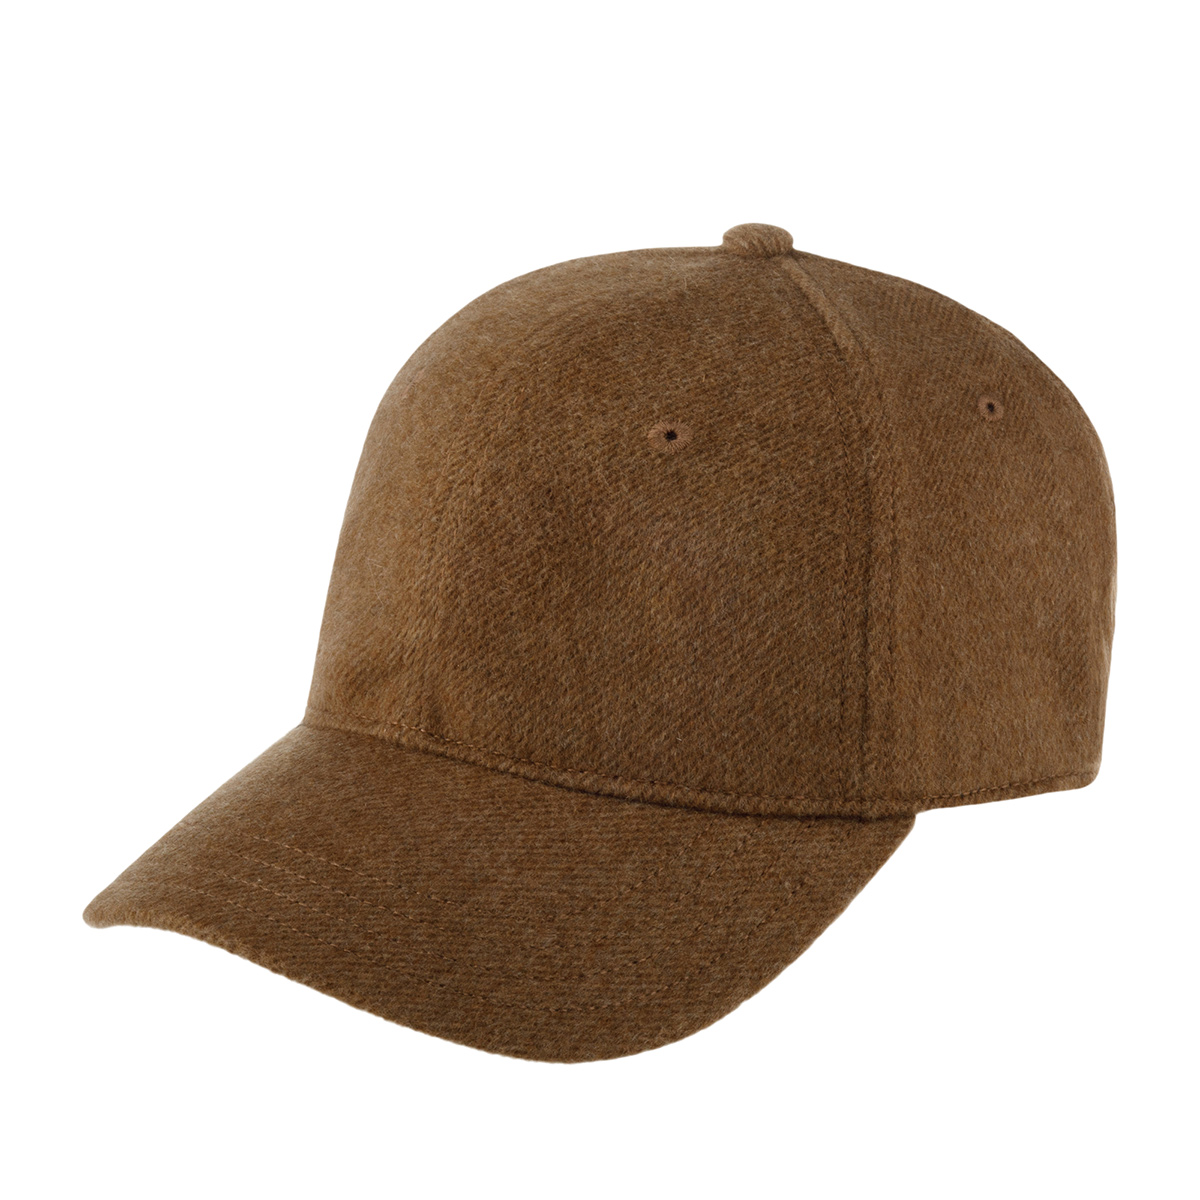 Бейсболка унисекс Stetson 7710801 BASEBALL CAP CASHMERE коричневая, one size